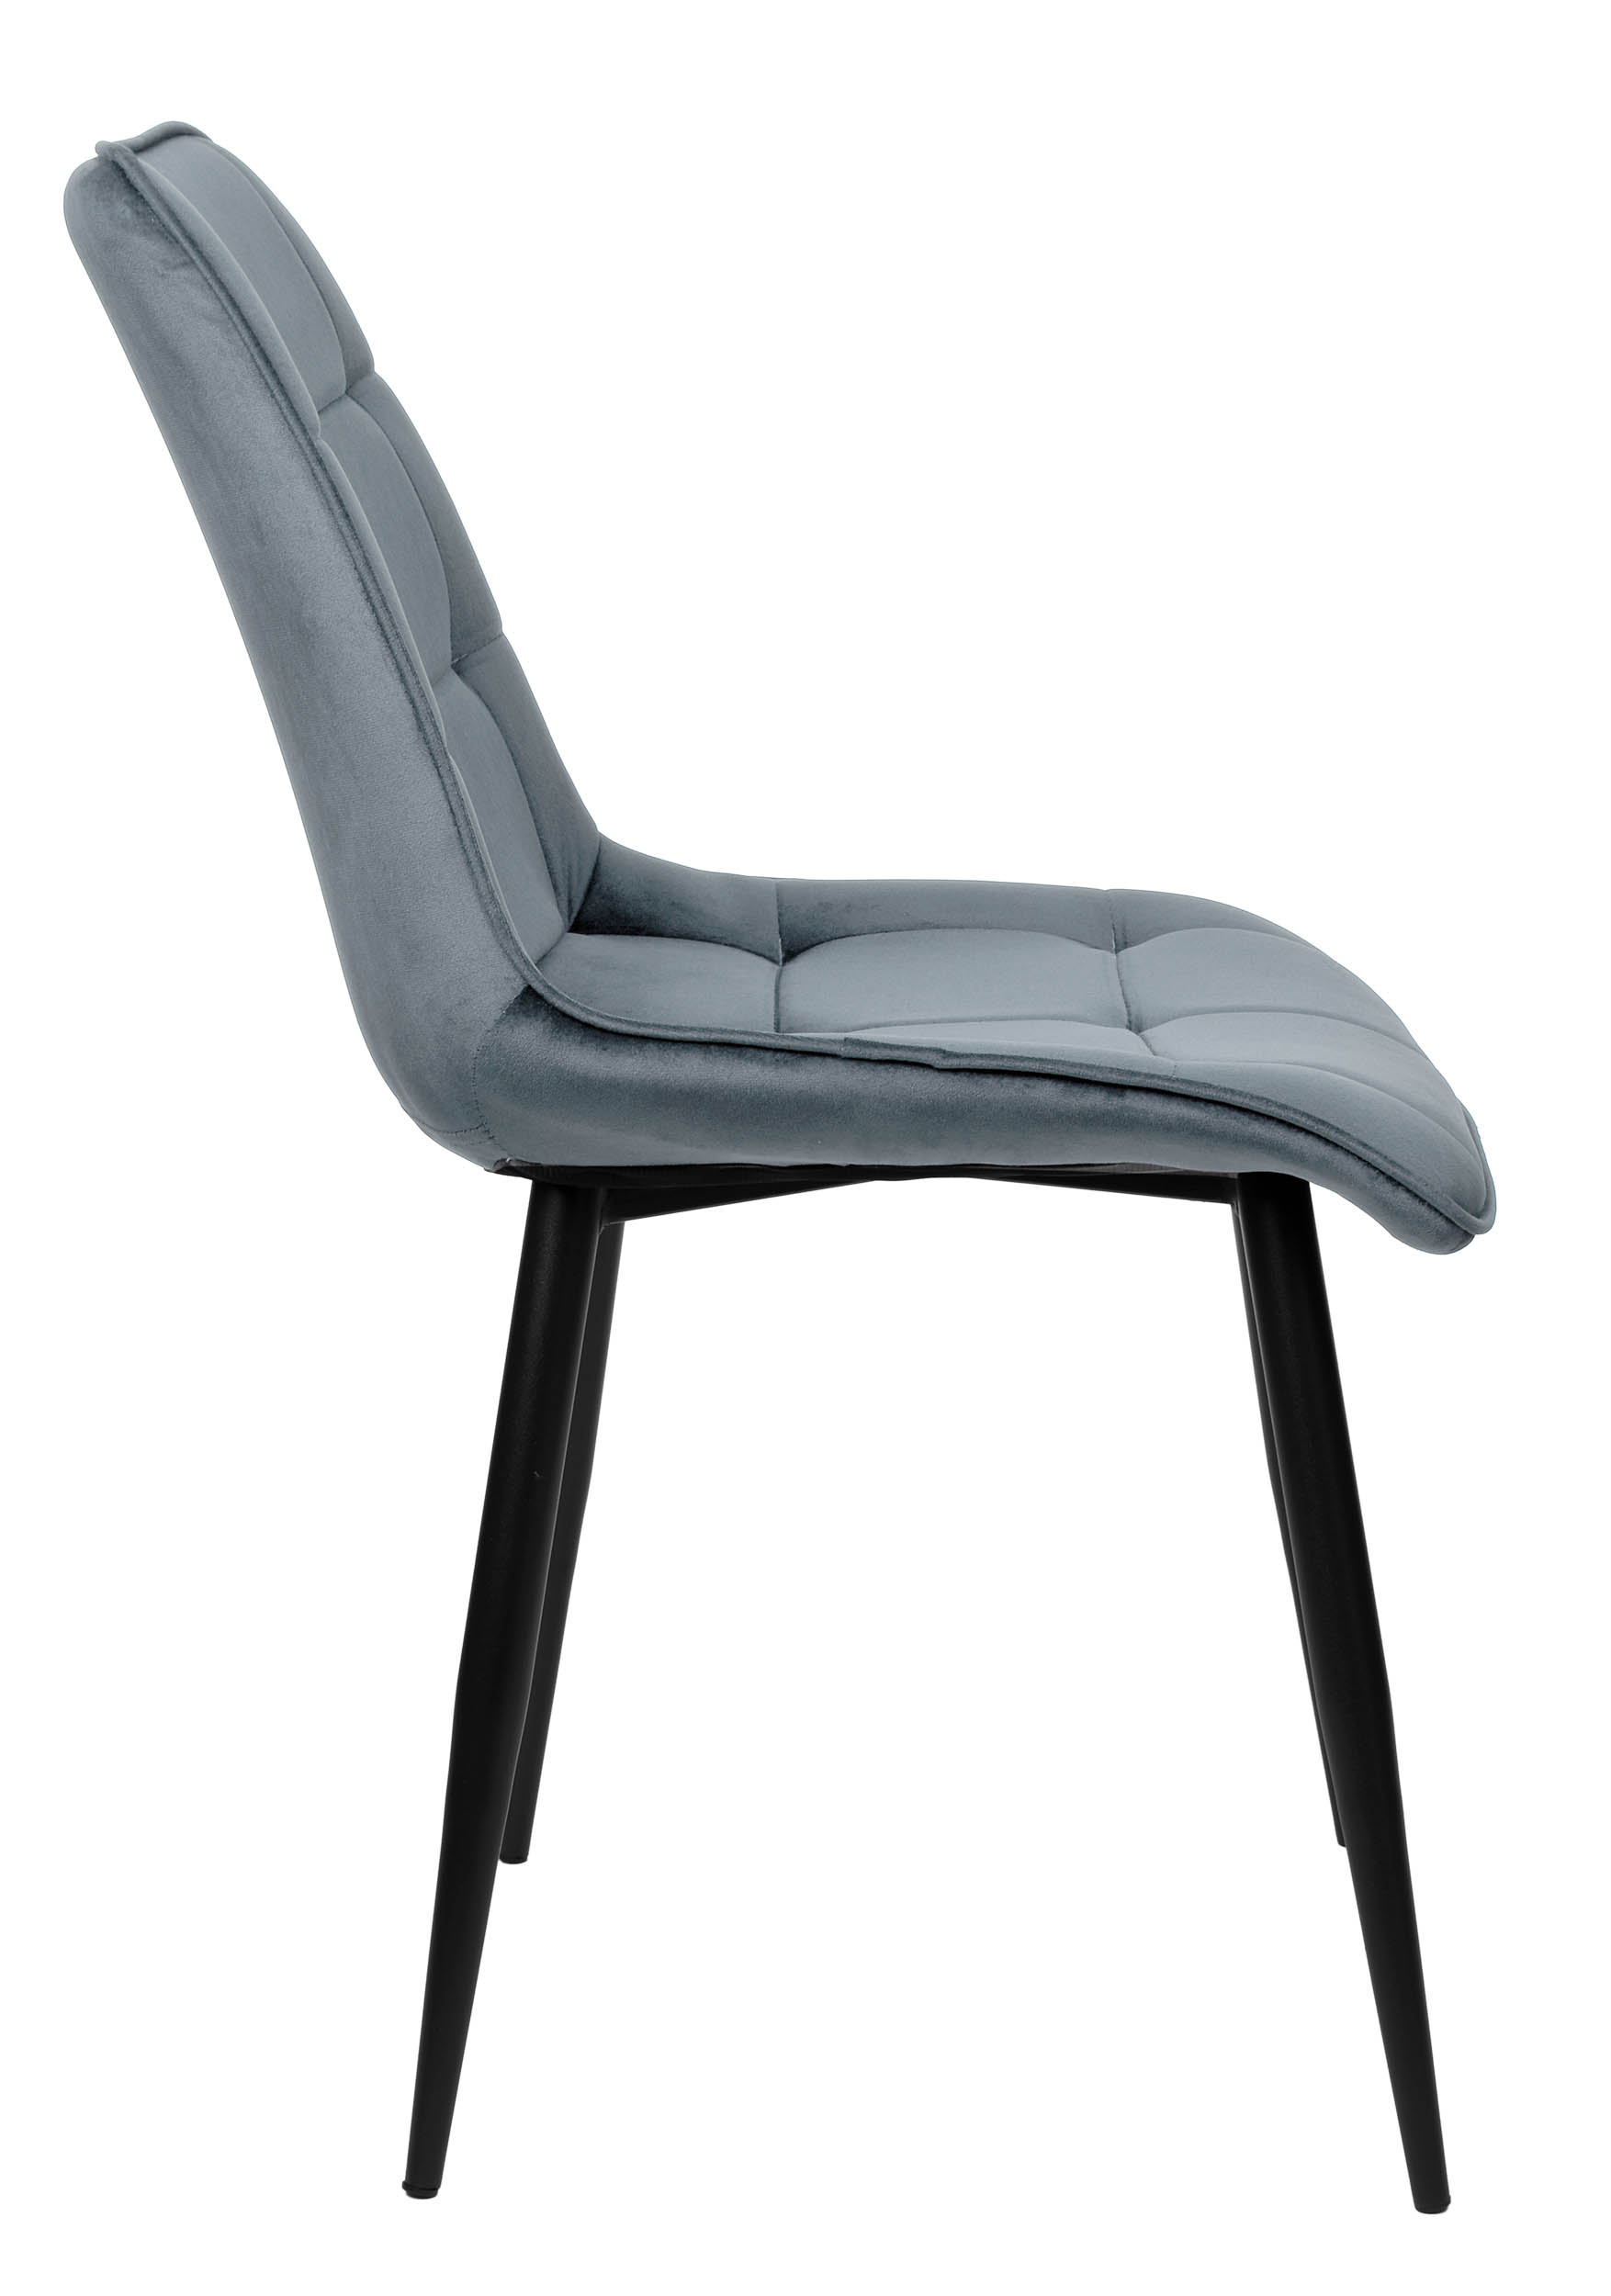 krzeslo nowoczesne aspen